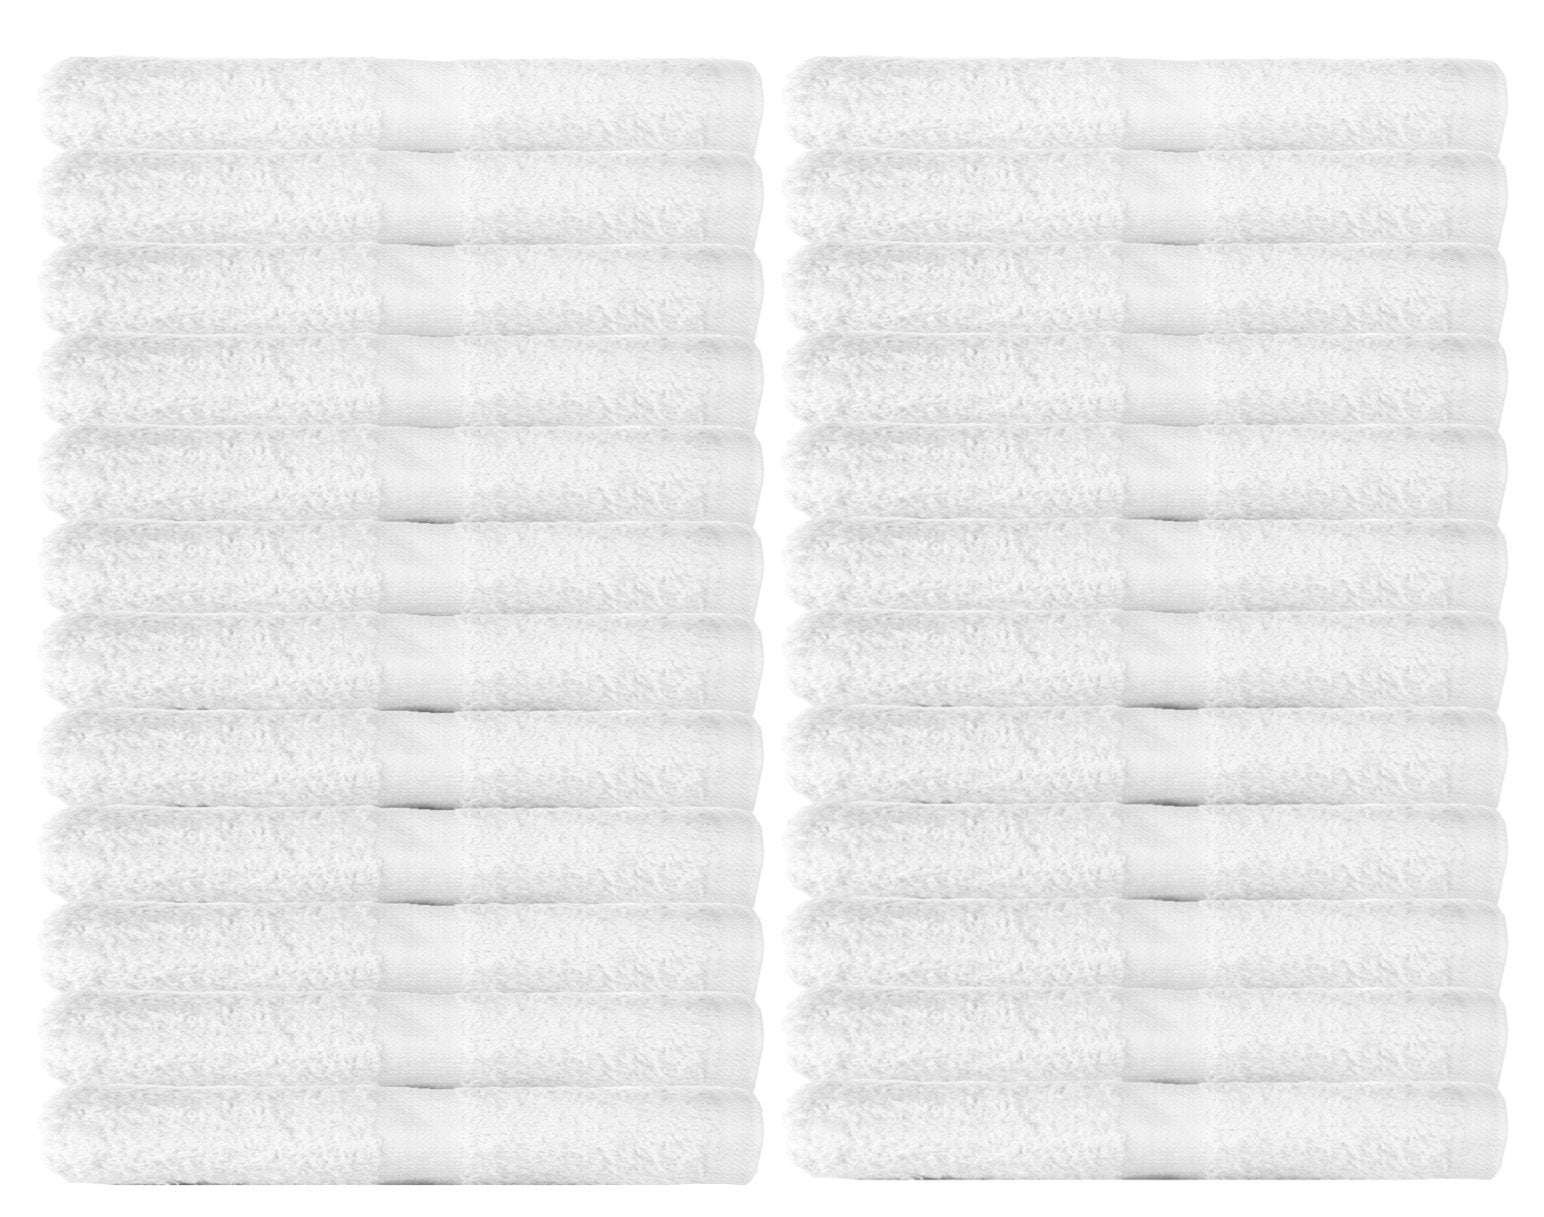 12X12 Wholesale White Cotton Washcloths - Towel Super Center